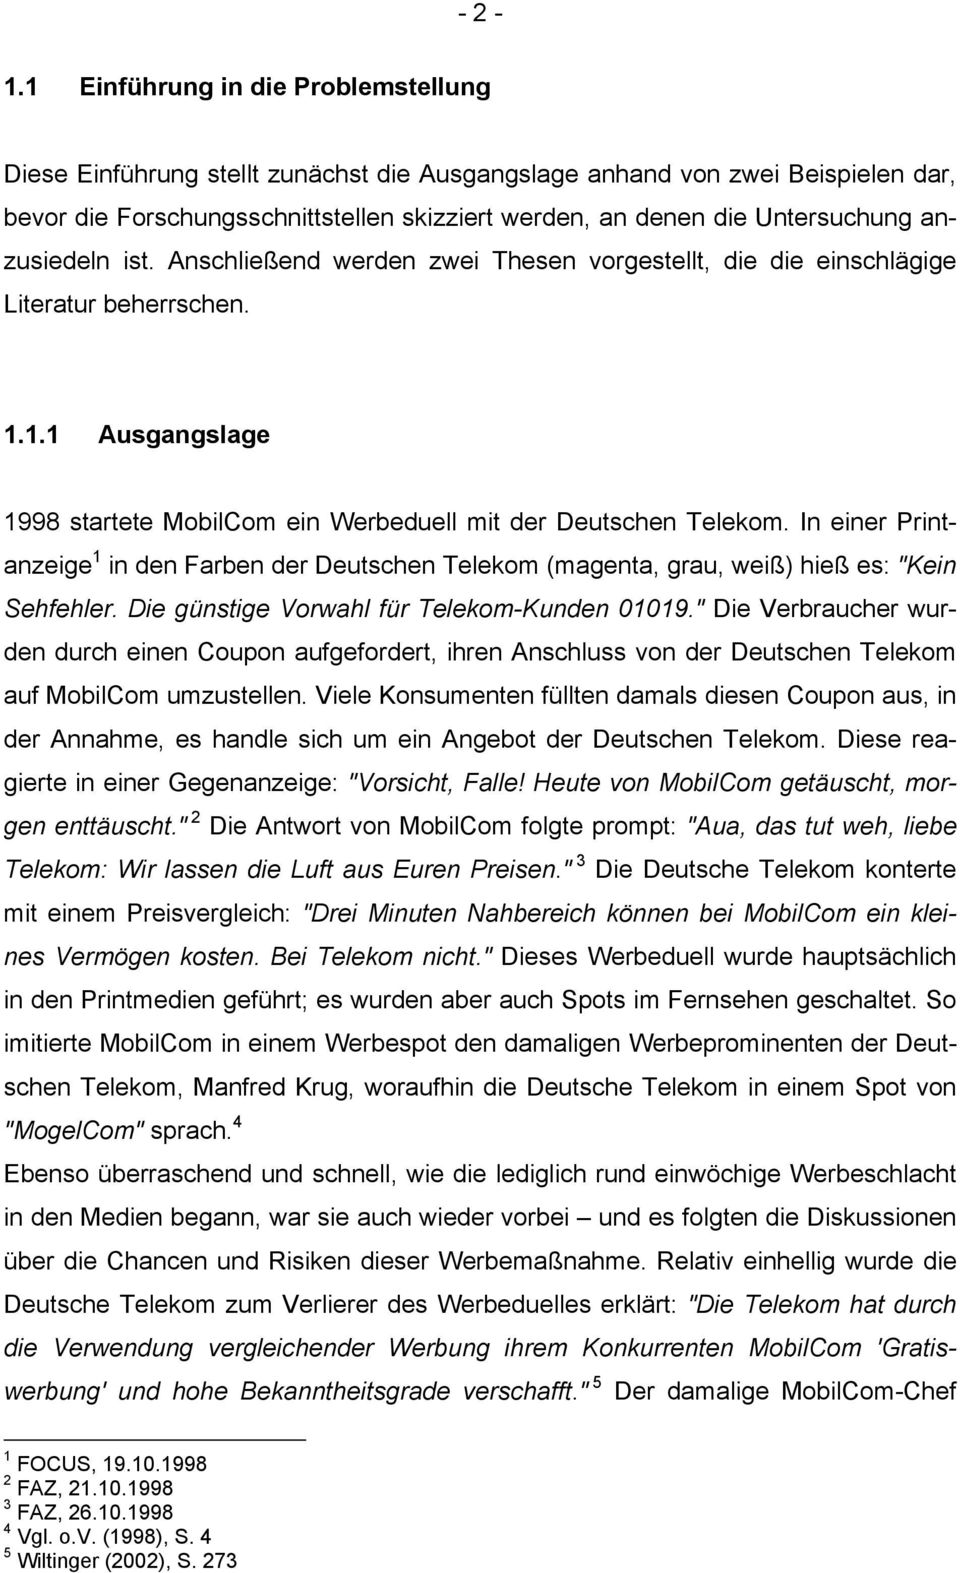 anzusiedeln ist. Anschließend werden zwei Thesen vorgestellt, die die einschlägige Literatur beherrschen. 1.1.1 Ausgangslage 1998 startete MobilCom ein Werbeduell mit der Deutschen Telekom.